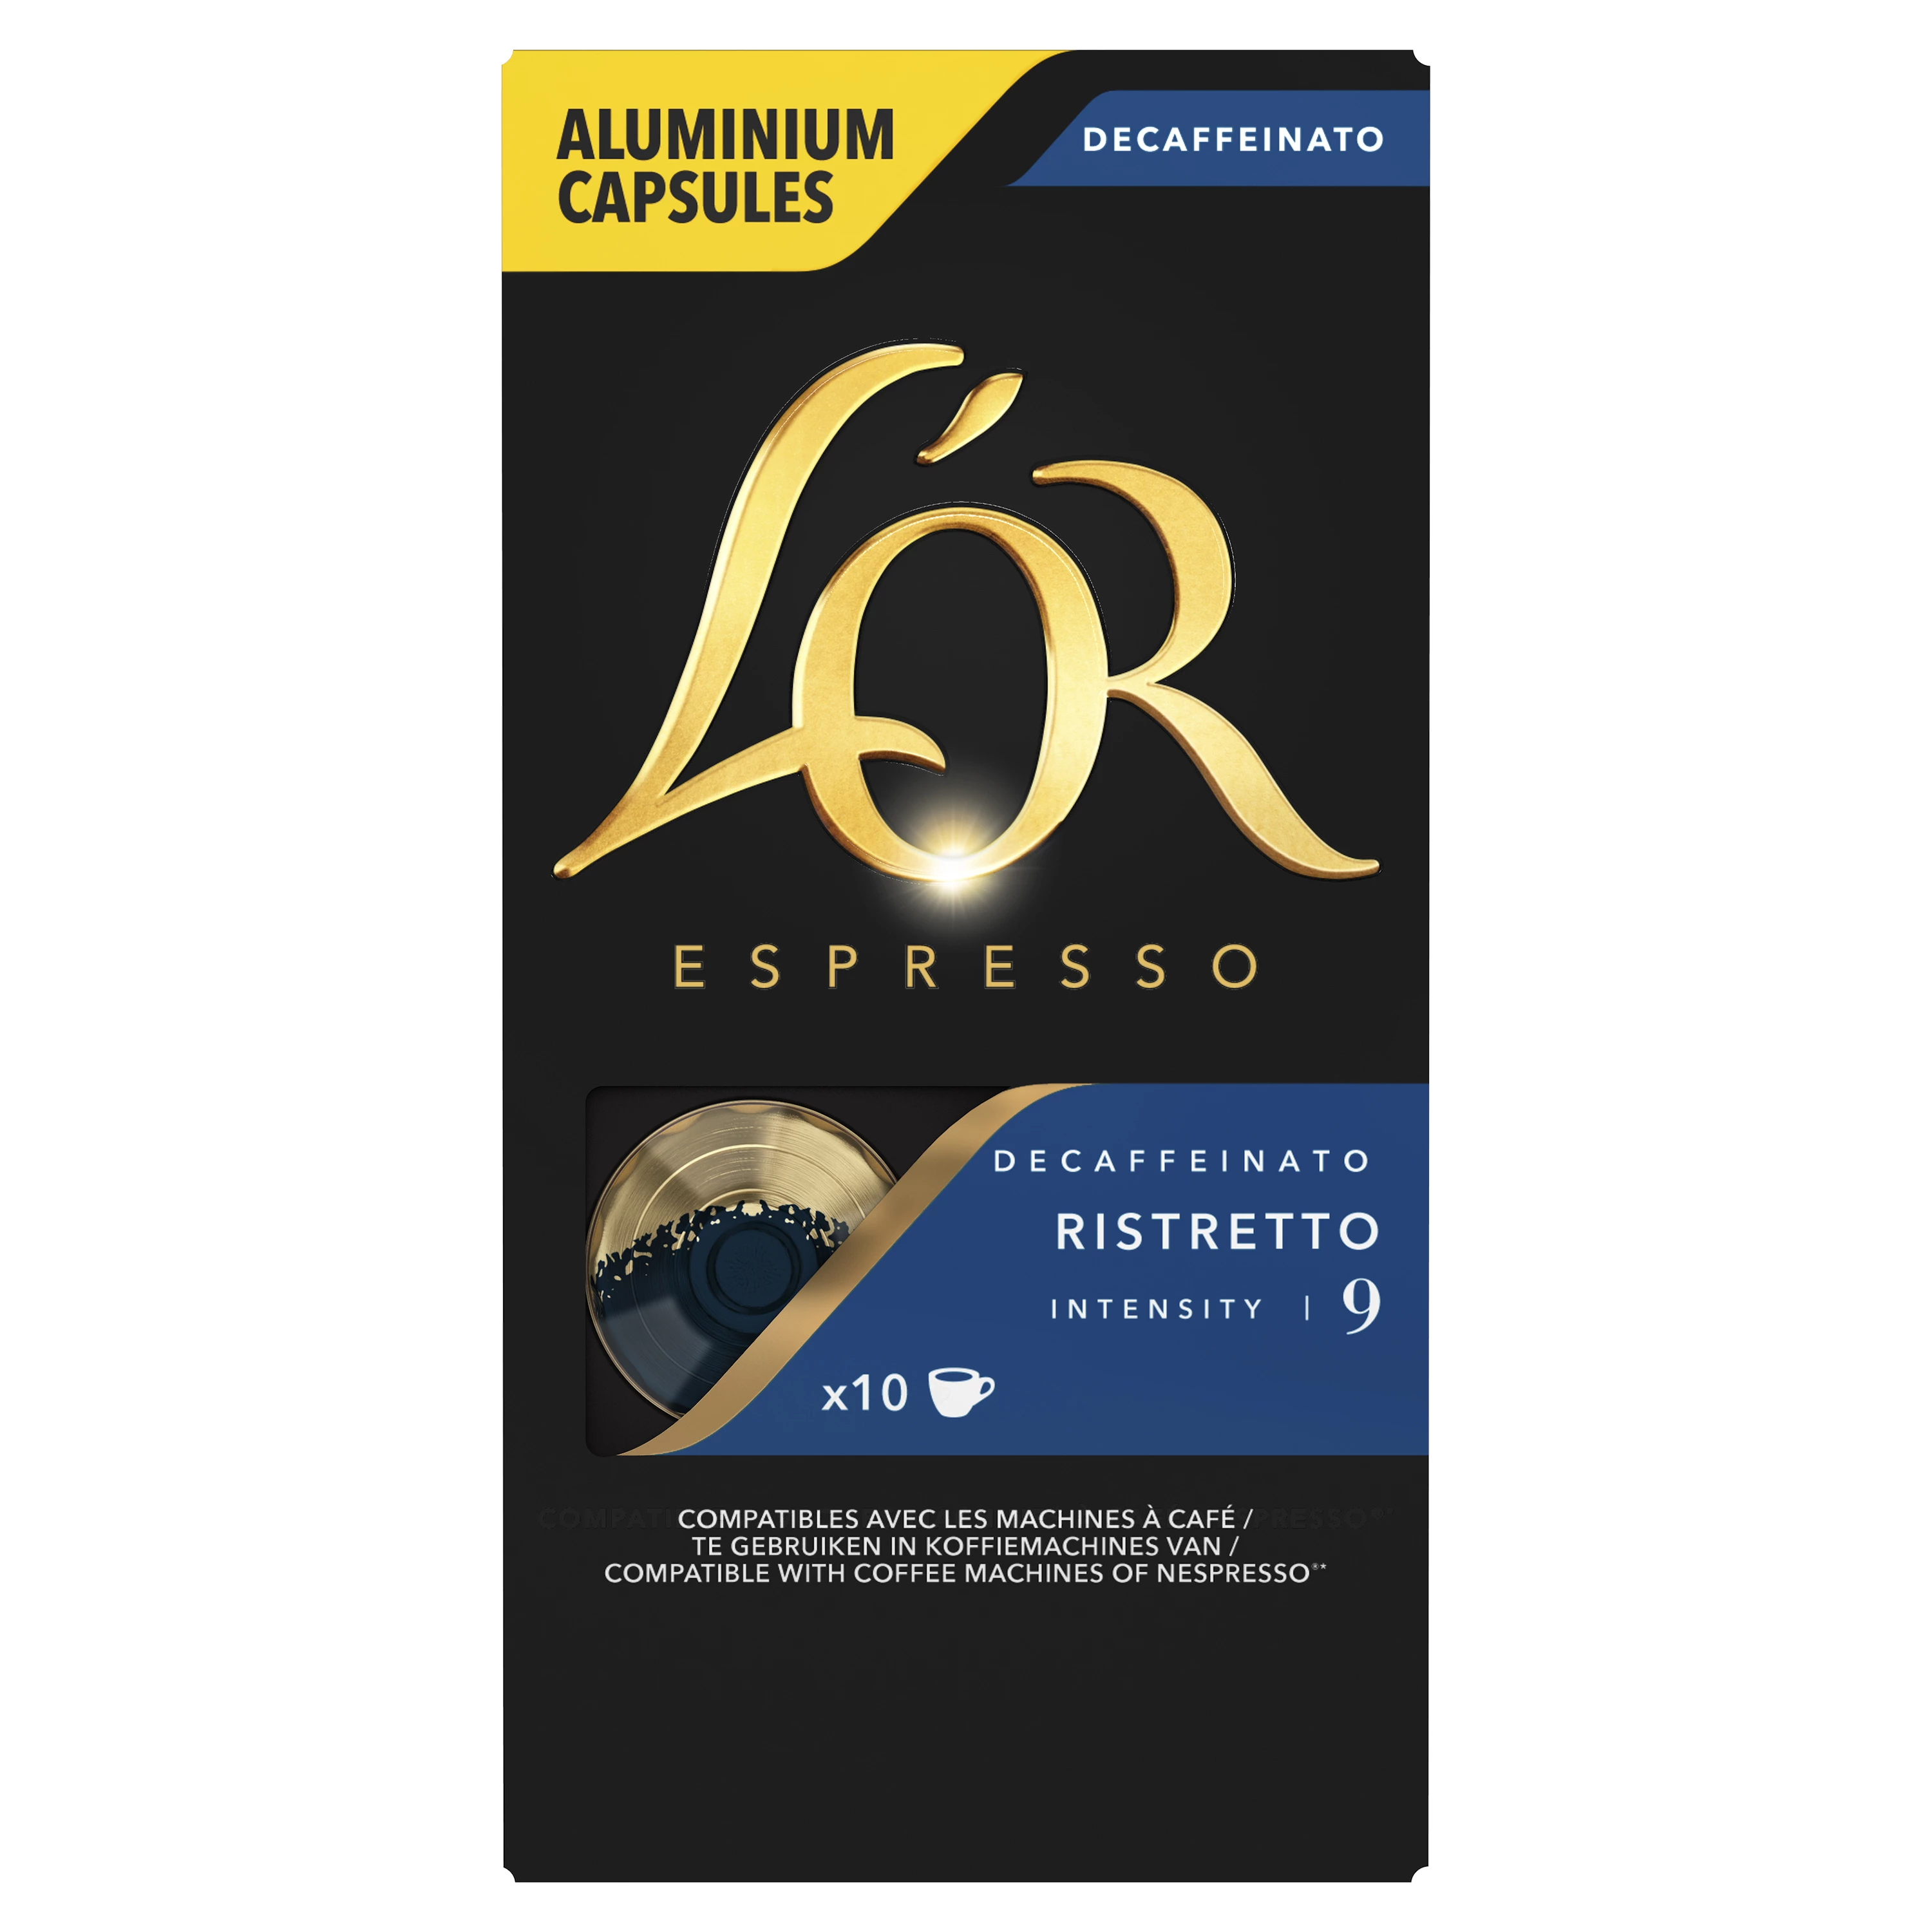 Café Ristretto decaffeinated x10 capsules 52g - L'OR